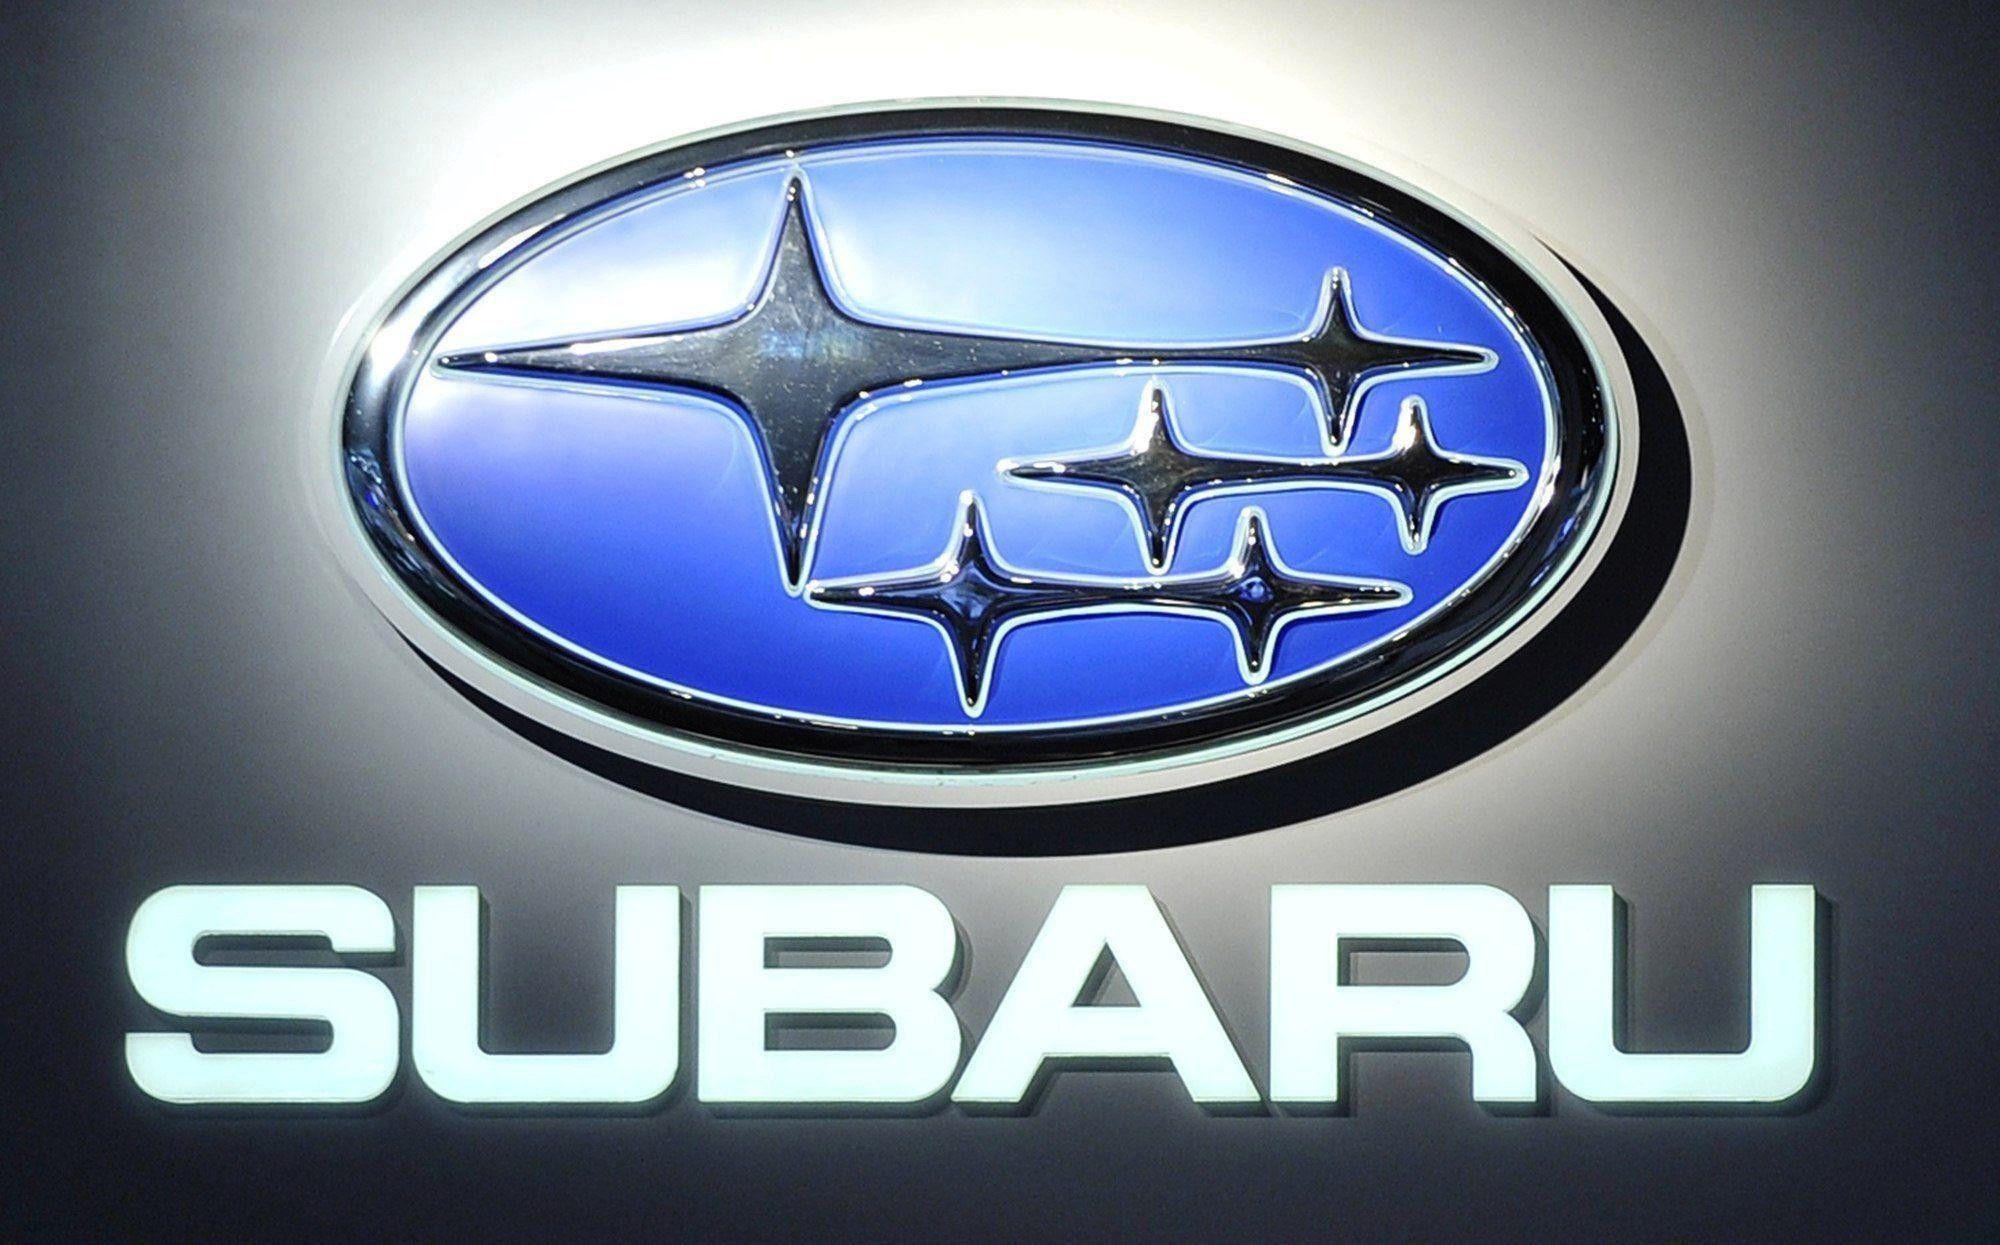 2018 Subaru Logo - Subaru Logo Wallpaper (the best 68+ images in 2018)